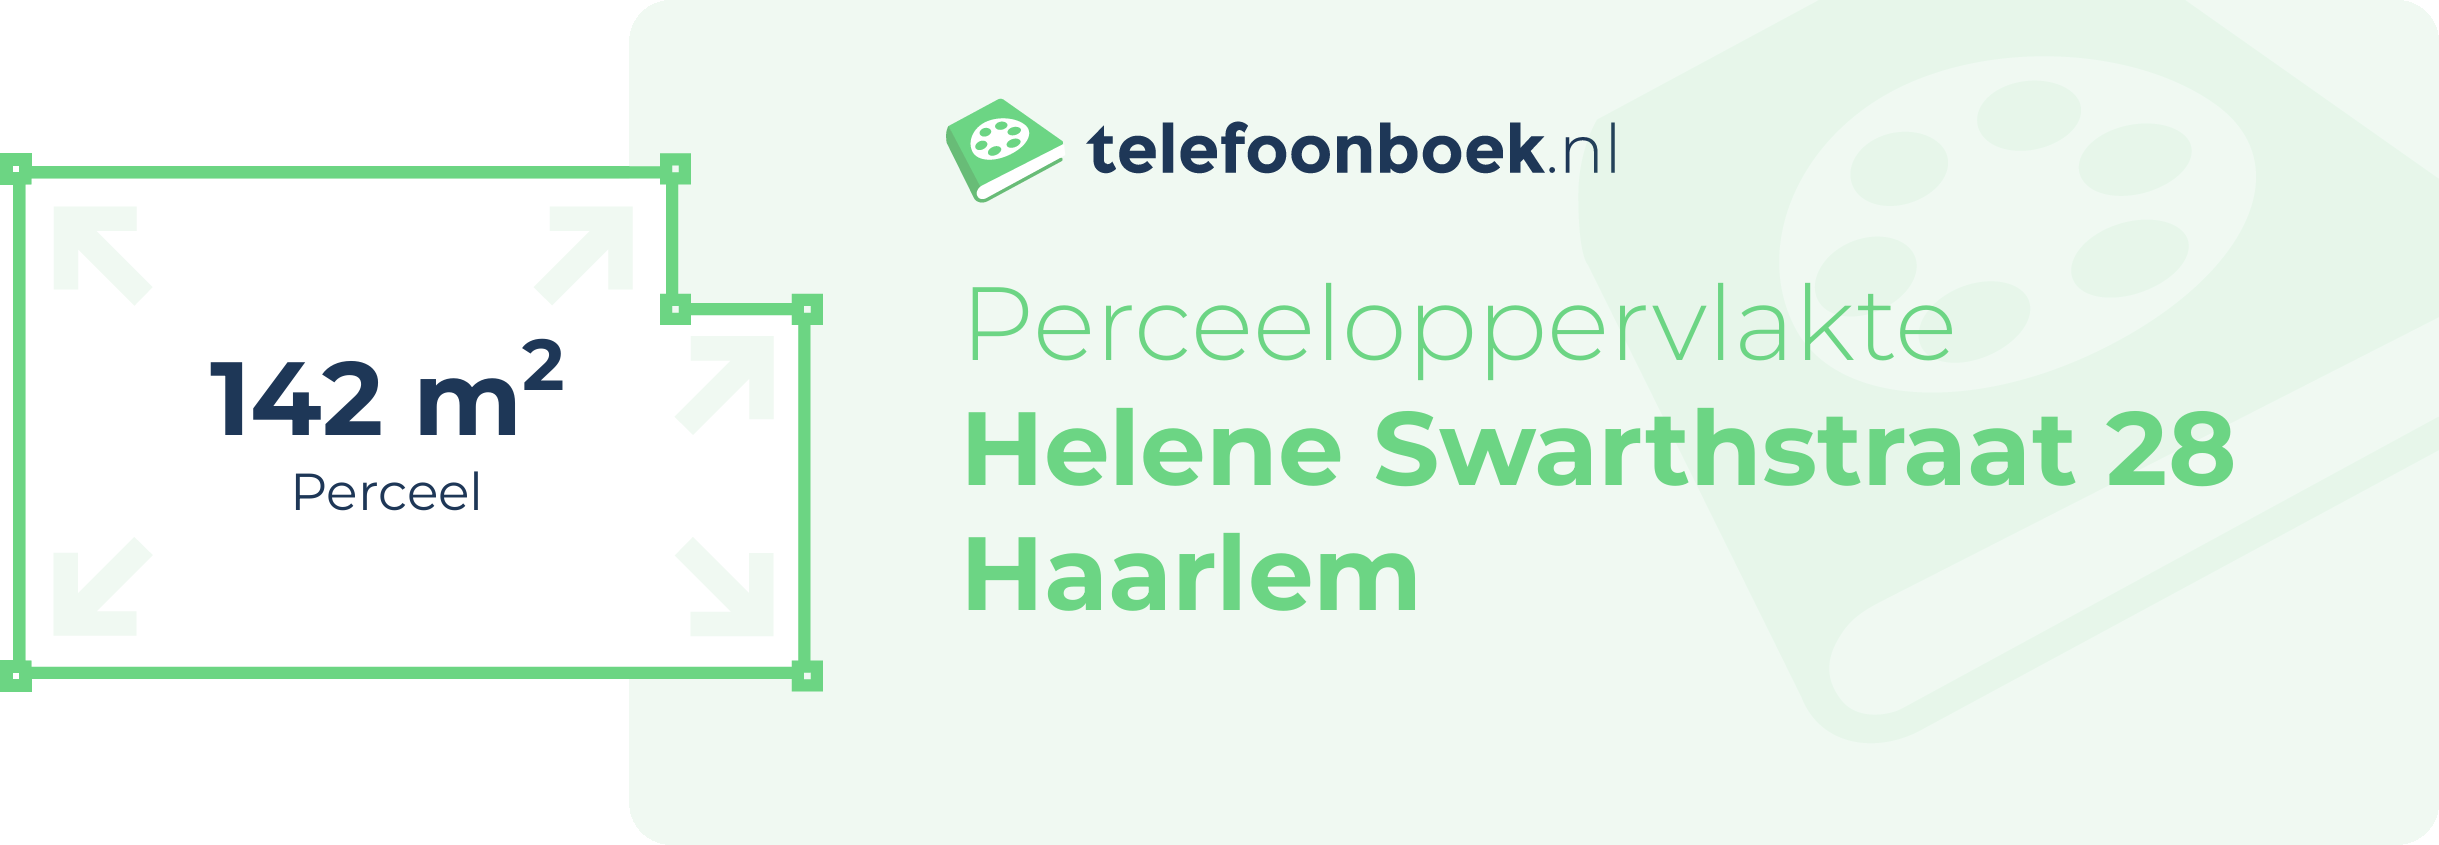 Perceeloppervlakte Helene Swarthstraat 28 Haarlem